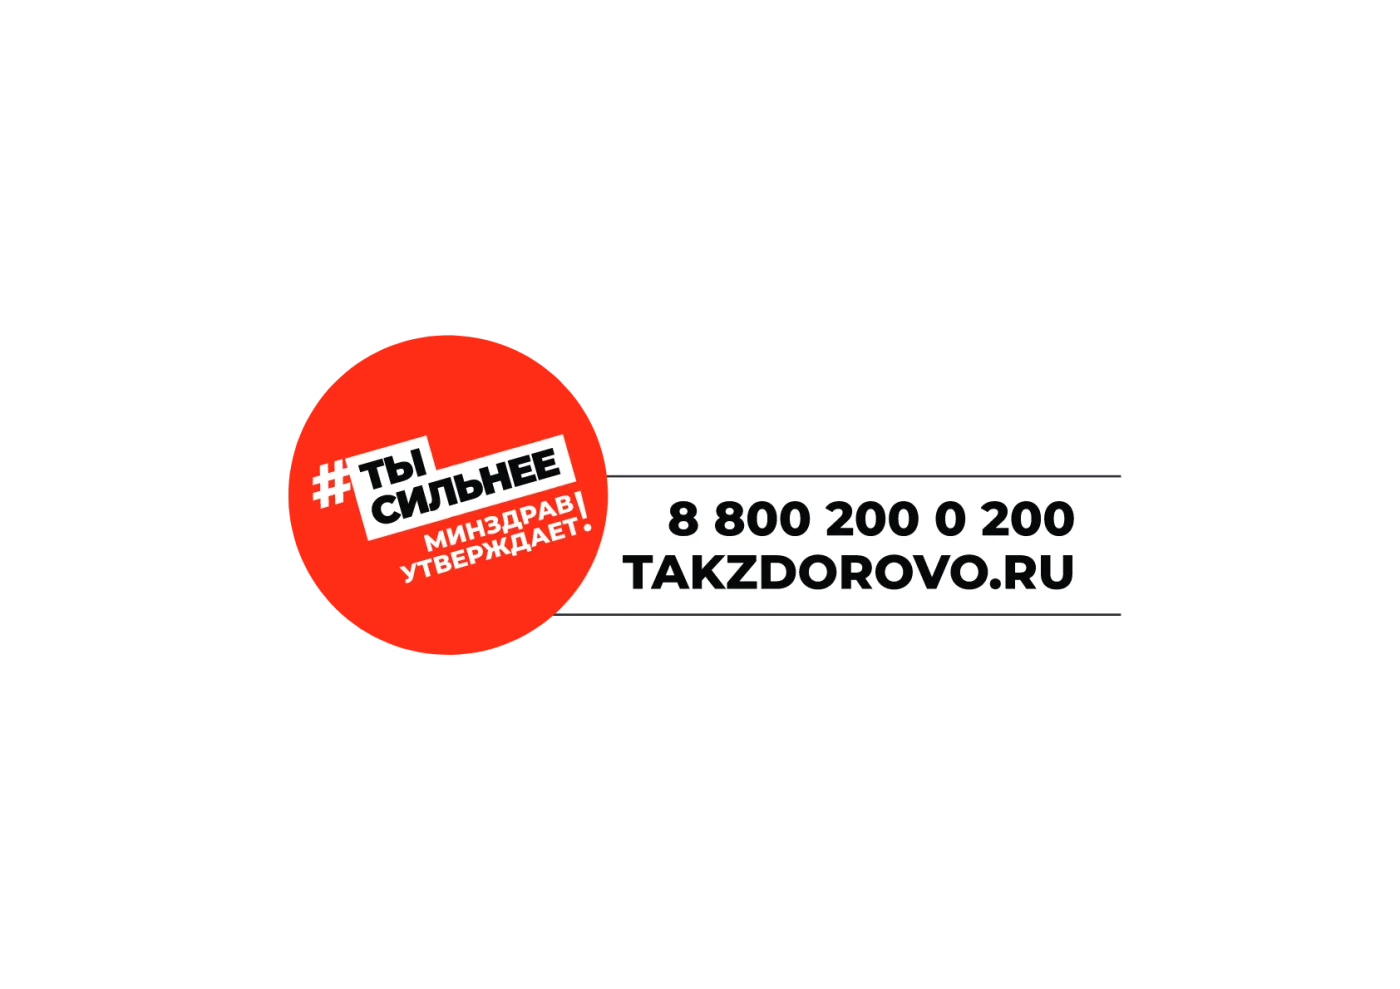 Takzdorovo.ru — официальный портал Минздрава России